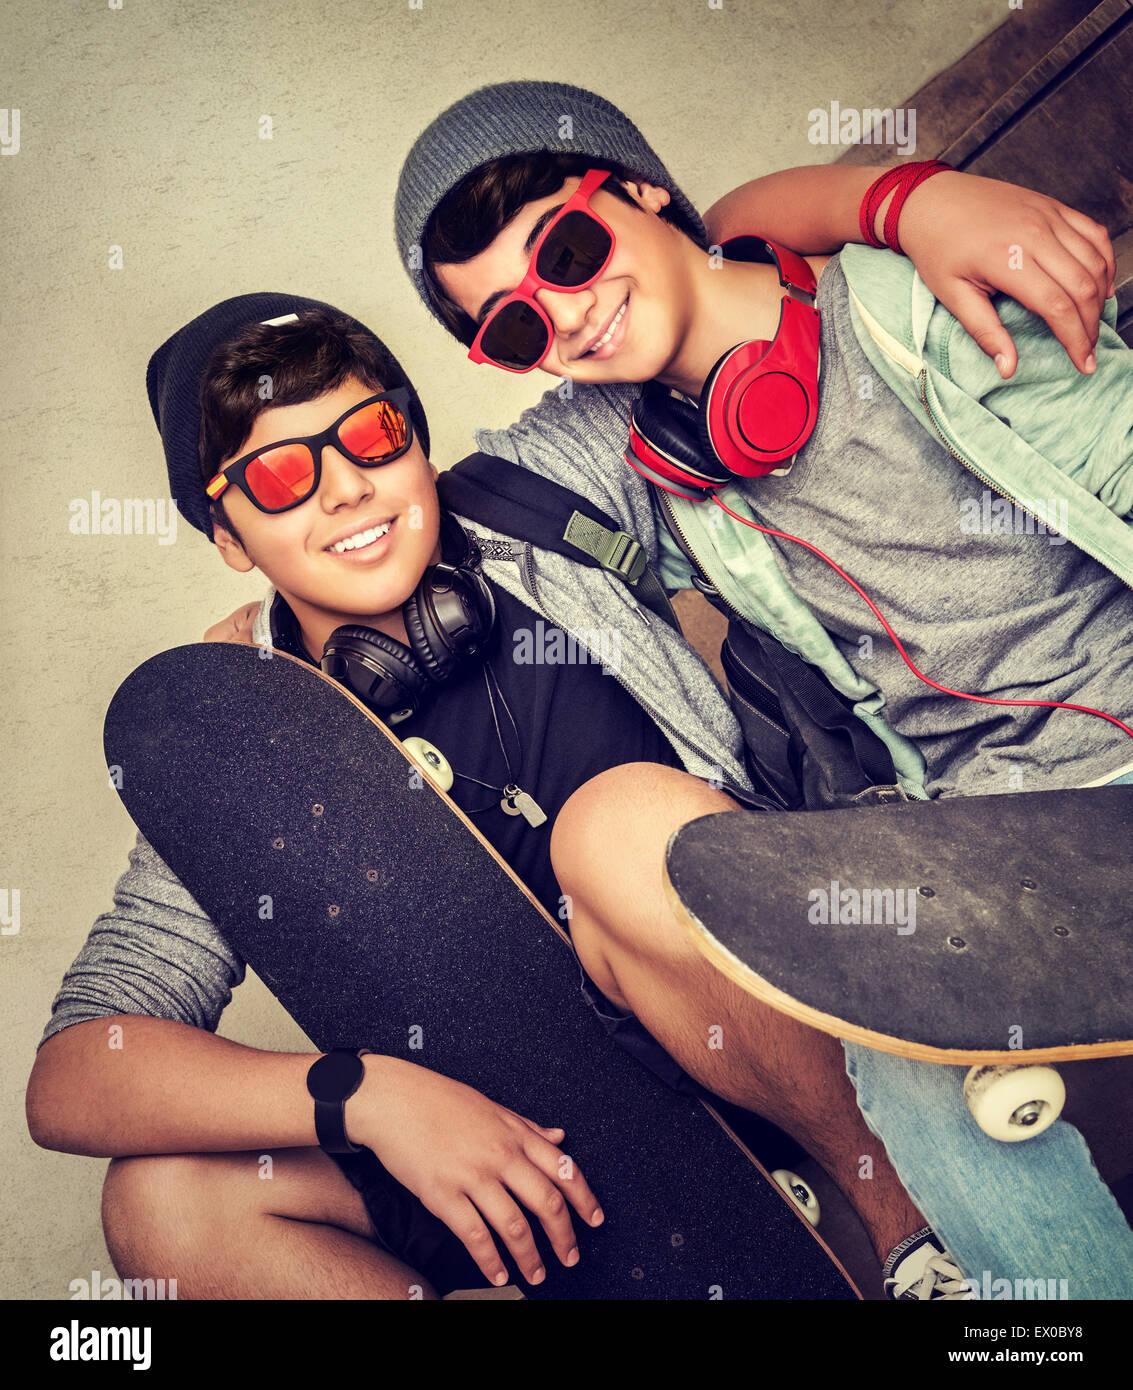 Zwei glückliche stilvolle Teen Boys auf der Bank sitzen und halten Skateboards, sport fröhlich aktive Freunde genießen im freien Stockfoto